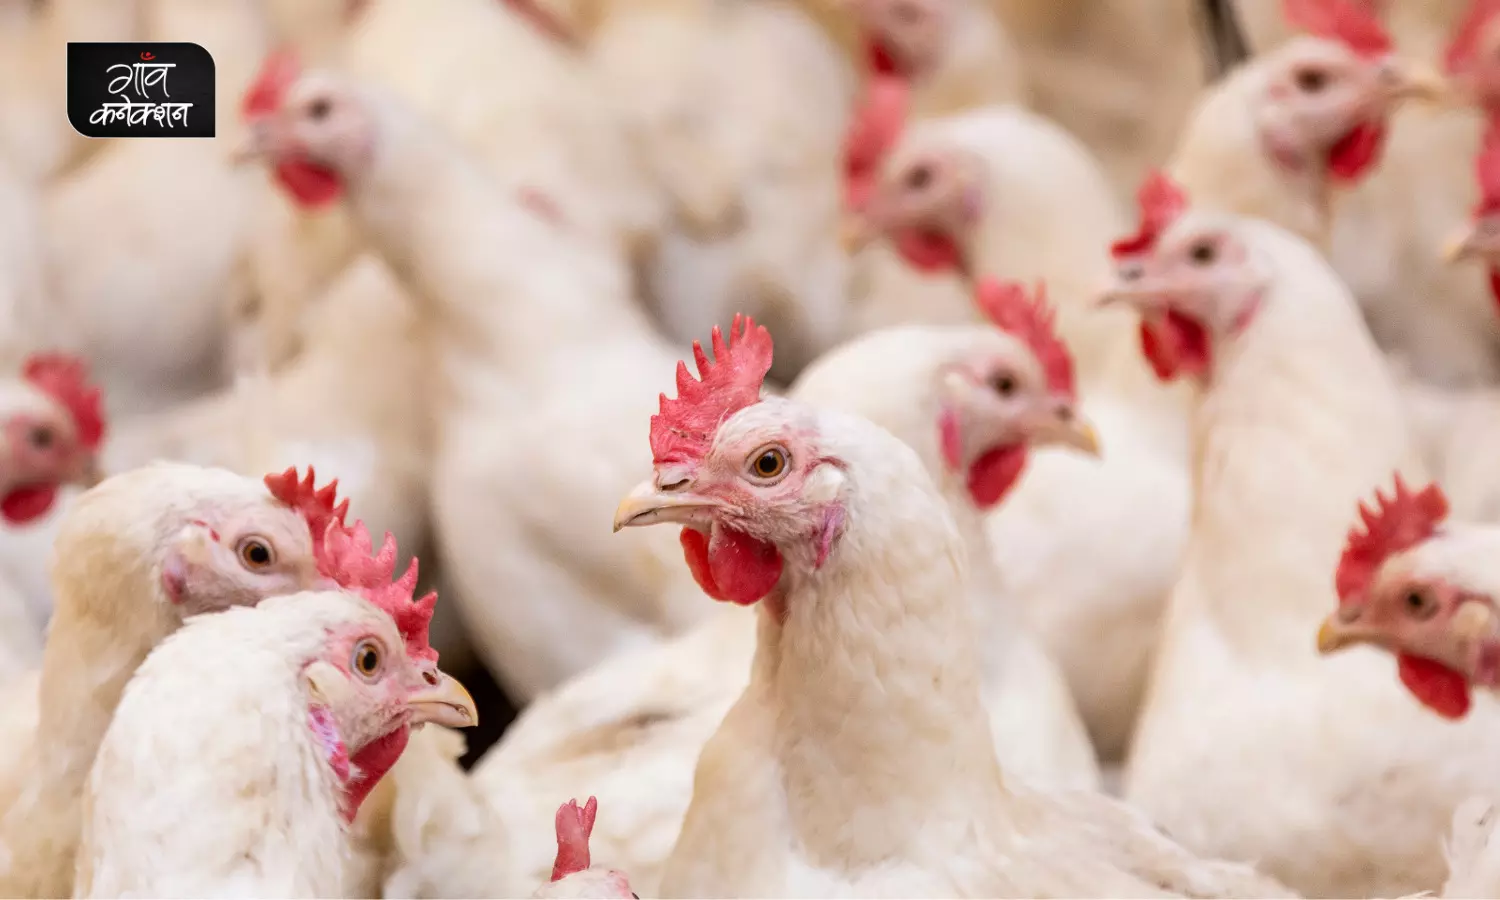 झारखंड के रांची में बर्ड फ्लू, संक्रमण रोकने के लिए एक किमी के दायरे में मारी गईं हज़ारों मुर्गियाँ